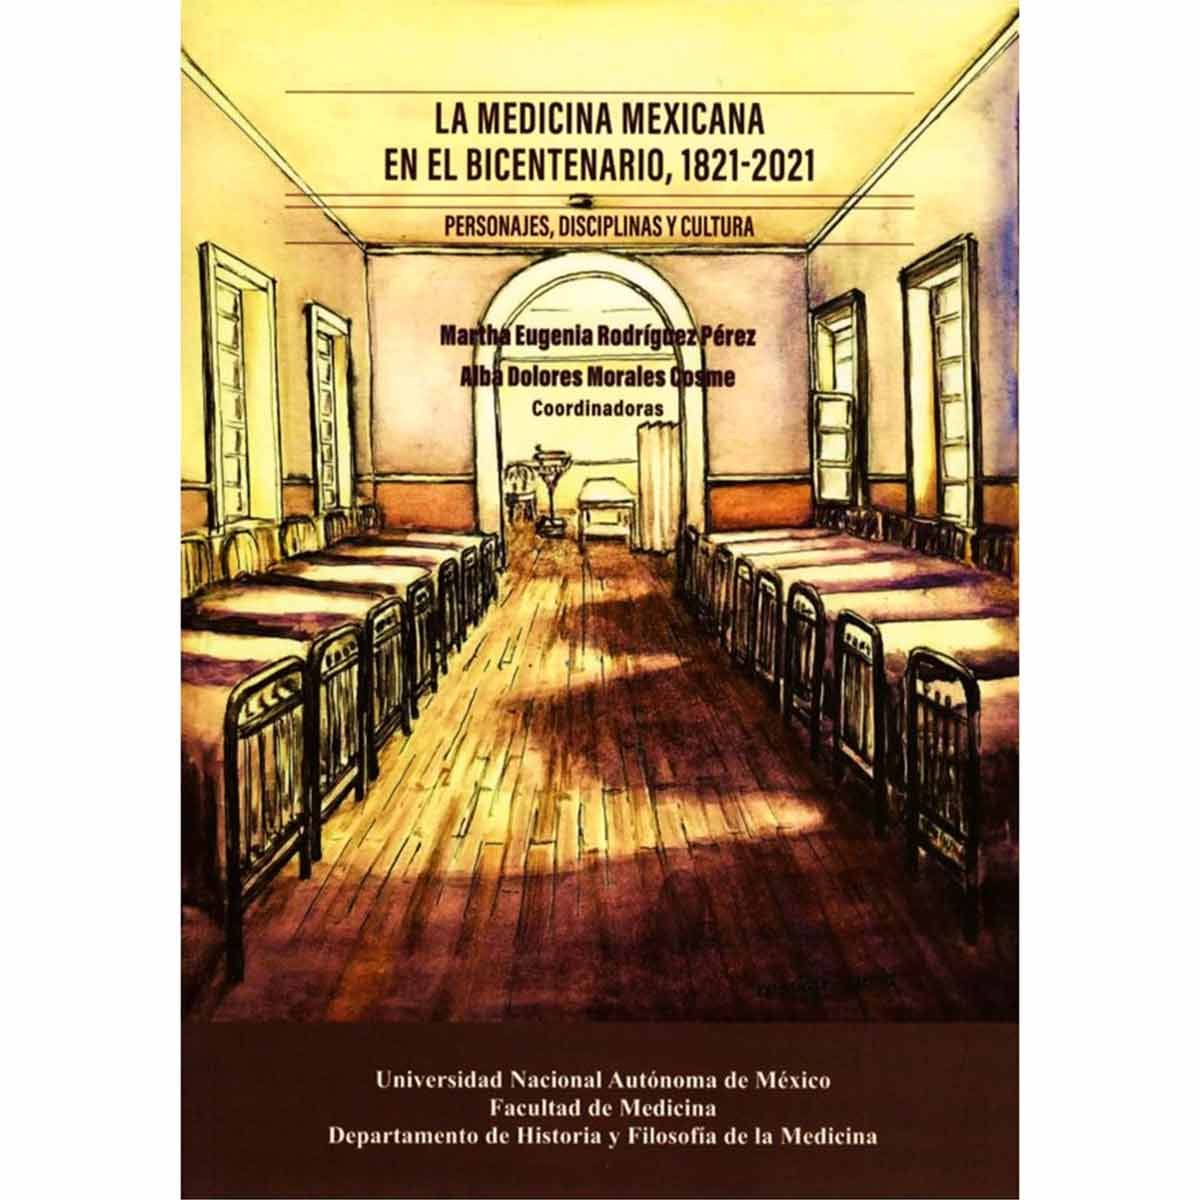 LA MEDICINA MEXICANA EN EL BICENTENARIO, 1821-2021